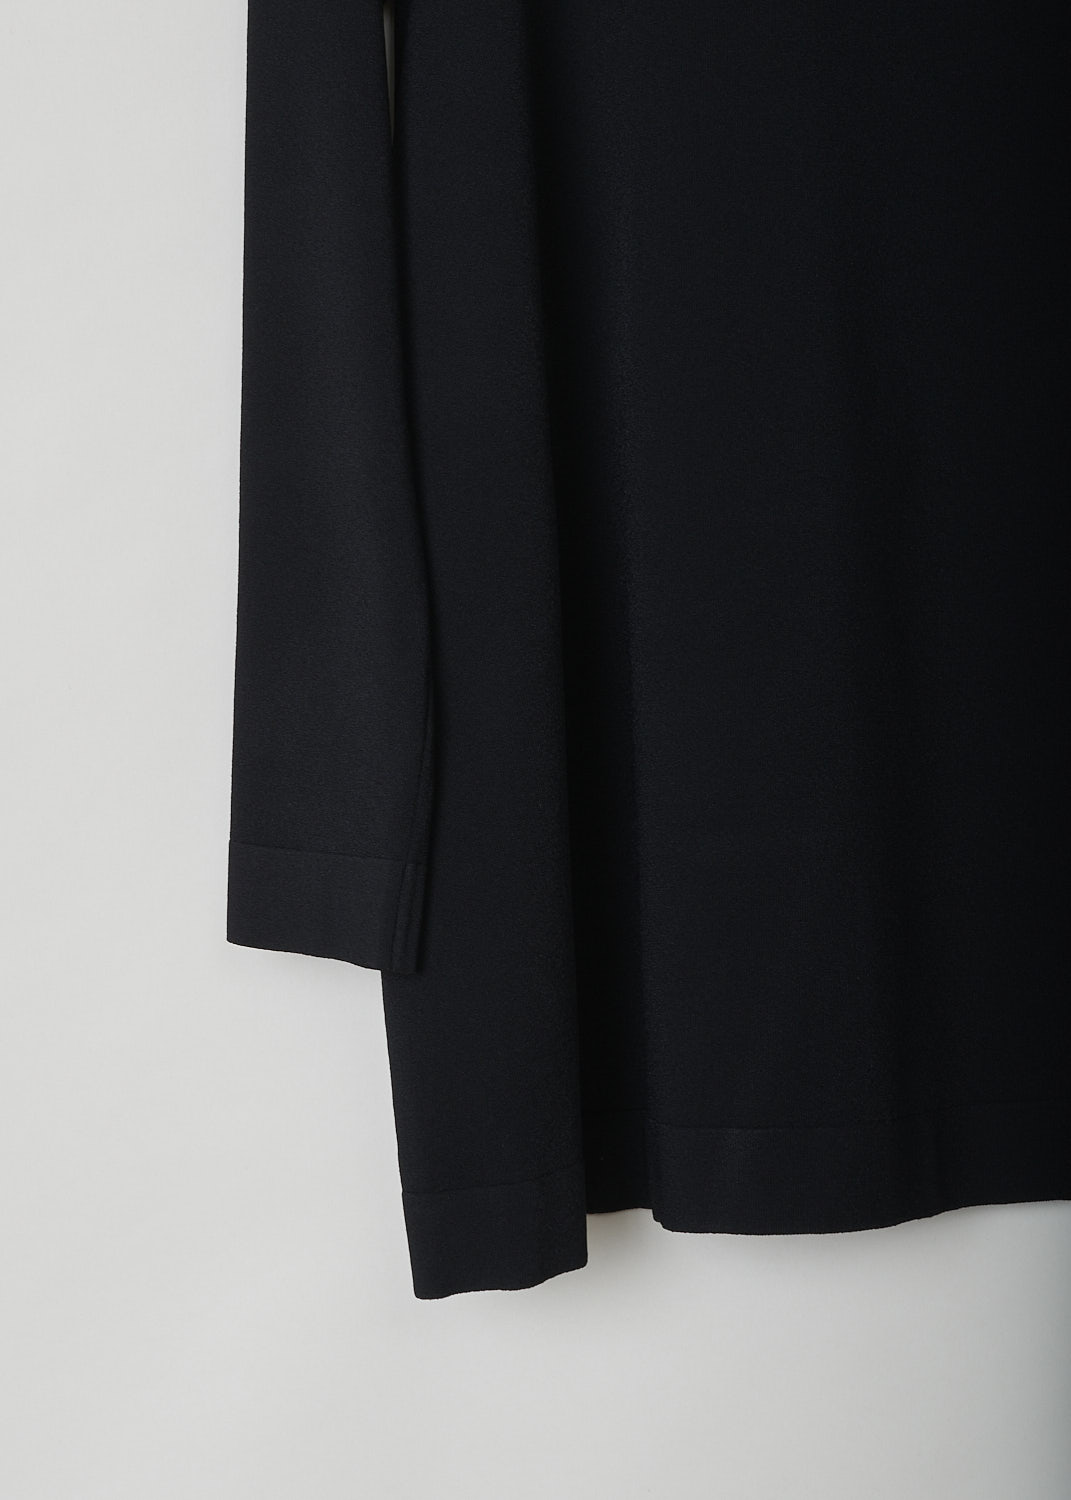 ALAÃA, BLACK A-LINE TOP, 9S9UD74RM035_C999, Black, Detail, This black top has long skin tight sleeves, a round neckline and an A-line silhouette.
